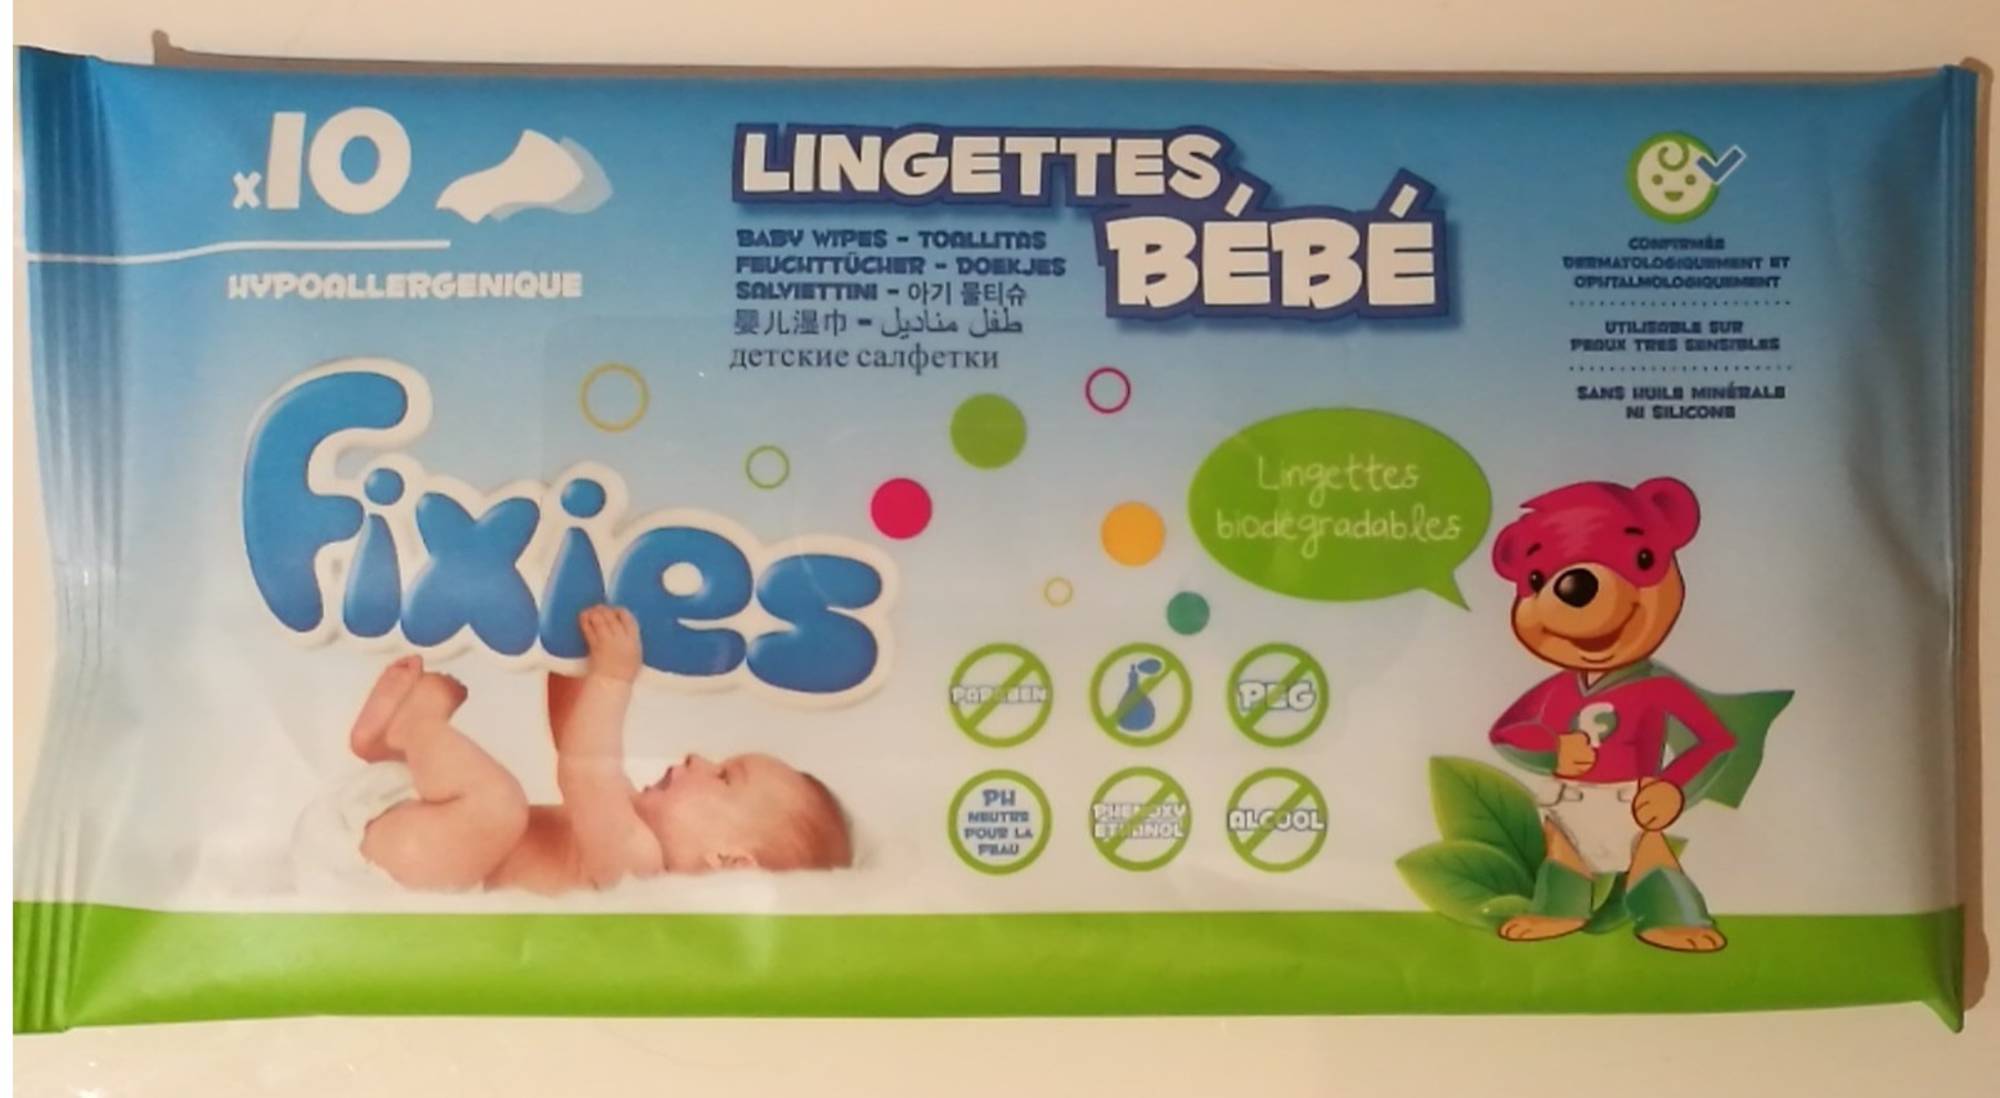 FIXIES - Lingettes Bébé